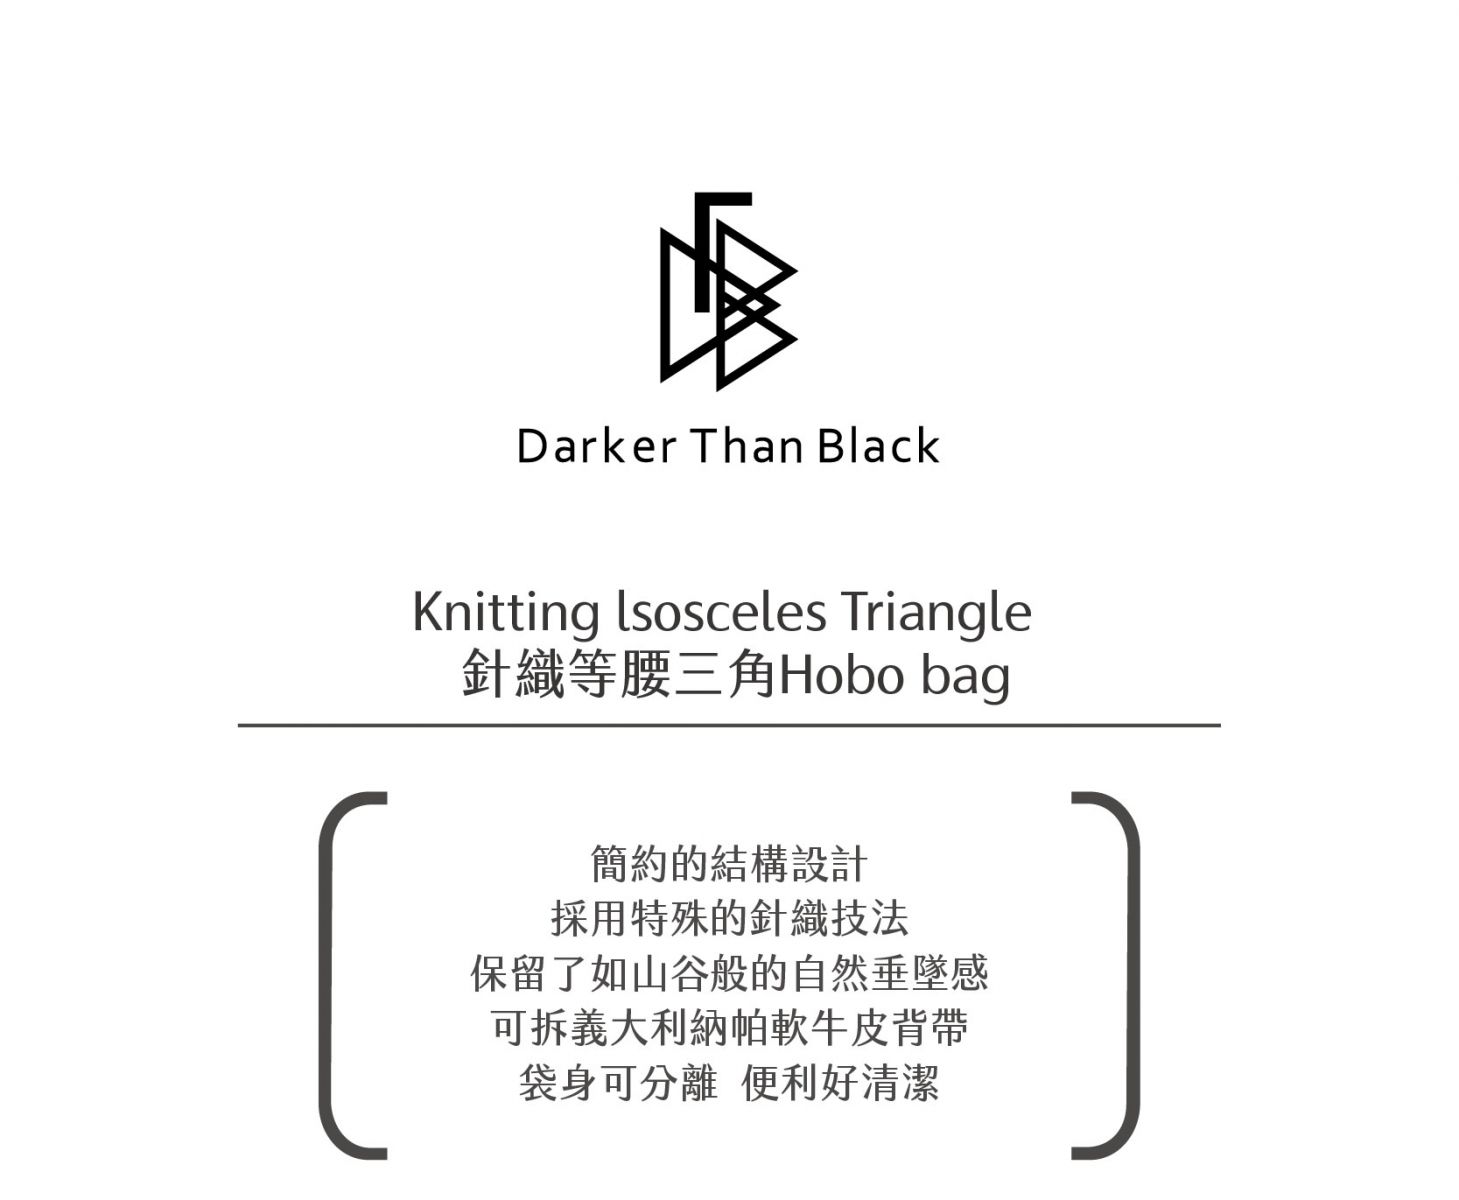 Knitting lsosceles Triangle Hobo Bag 針織等腰三角側背包